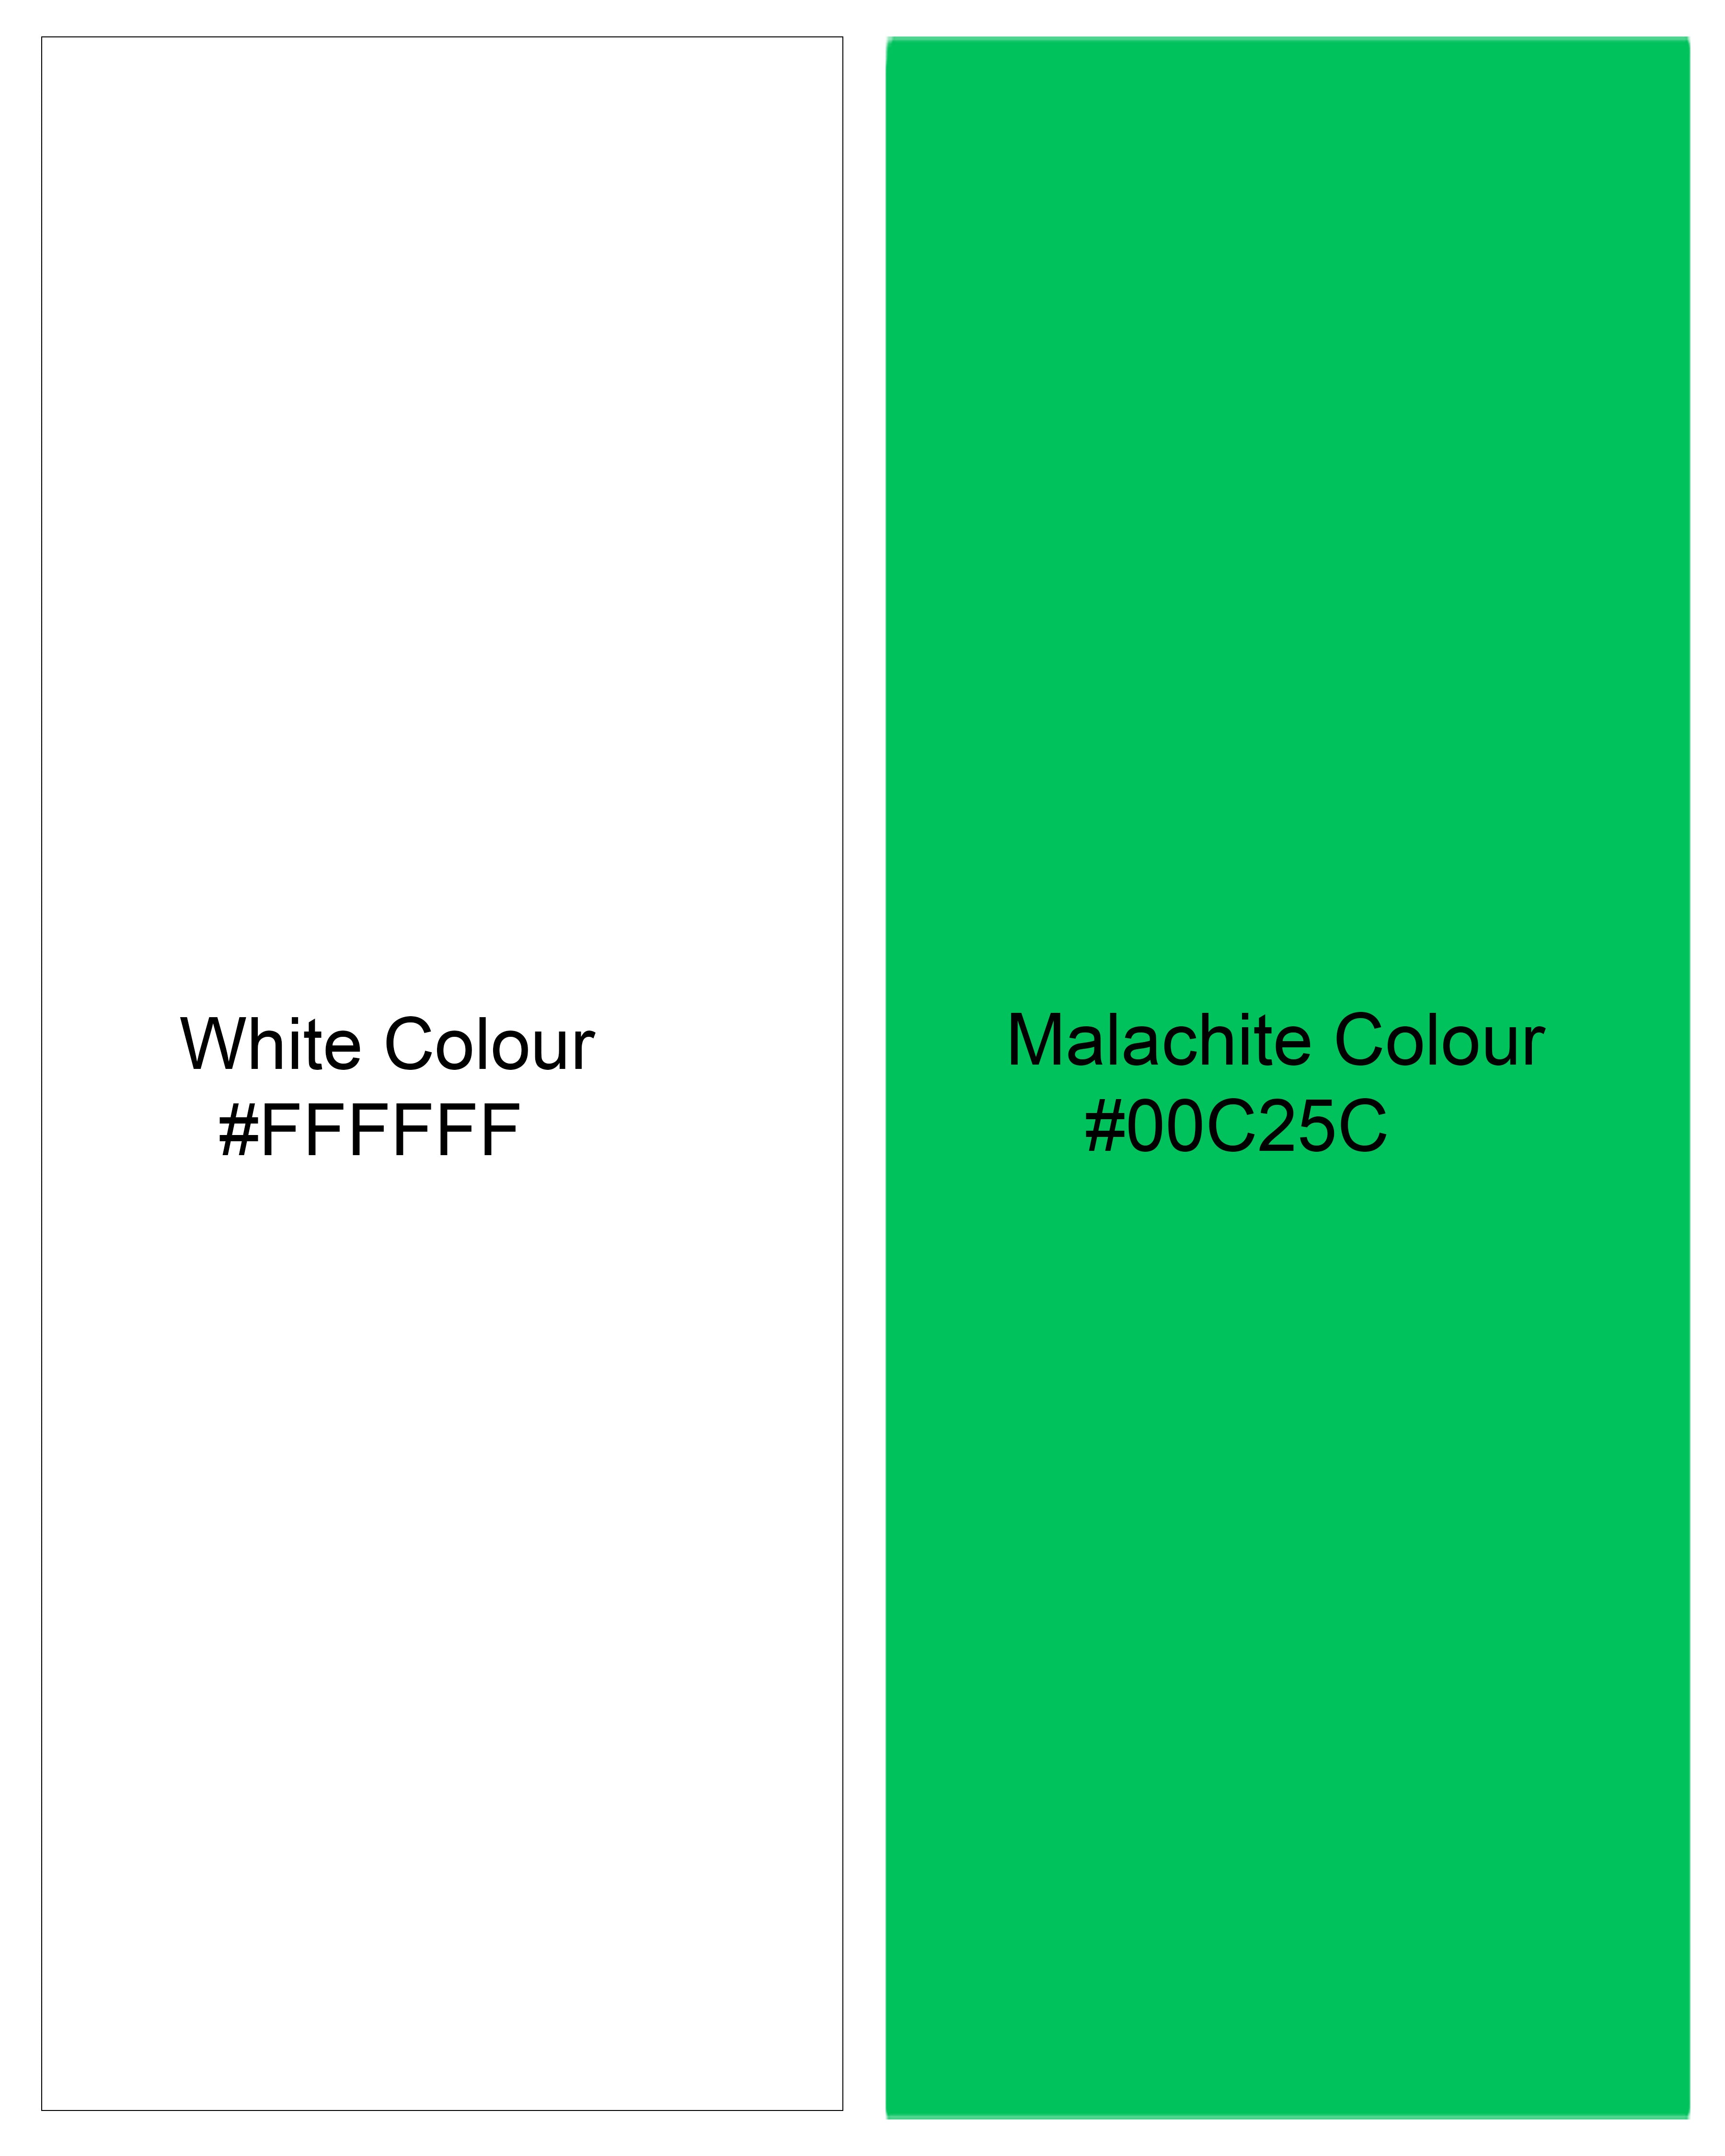 Bright White with Malachite Green Gingham Premium Cotton Kurta Shirt  8608-KS-38,8608-KS-H-38,8608-KS-39,8608-KS-H-39,8608-KS-40,8608-KS-H-40,8608-KS-42,8608-KS-H-42,8608-KS-44,8608-KS-H-44,8608-KS-46,8608-KS-H-46,8608-KS-48,8608-KS-H-48,8608-KS-50,8608-KS-H-50,8608-KS-52,8608-KS-H-52